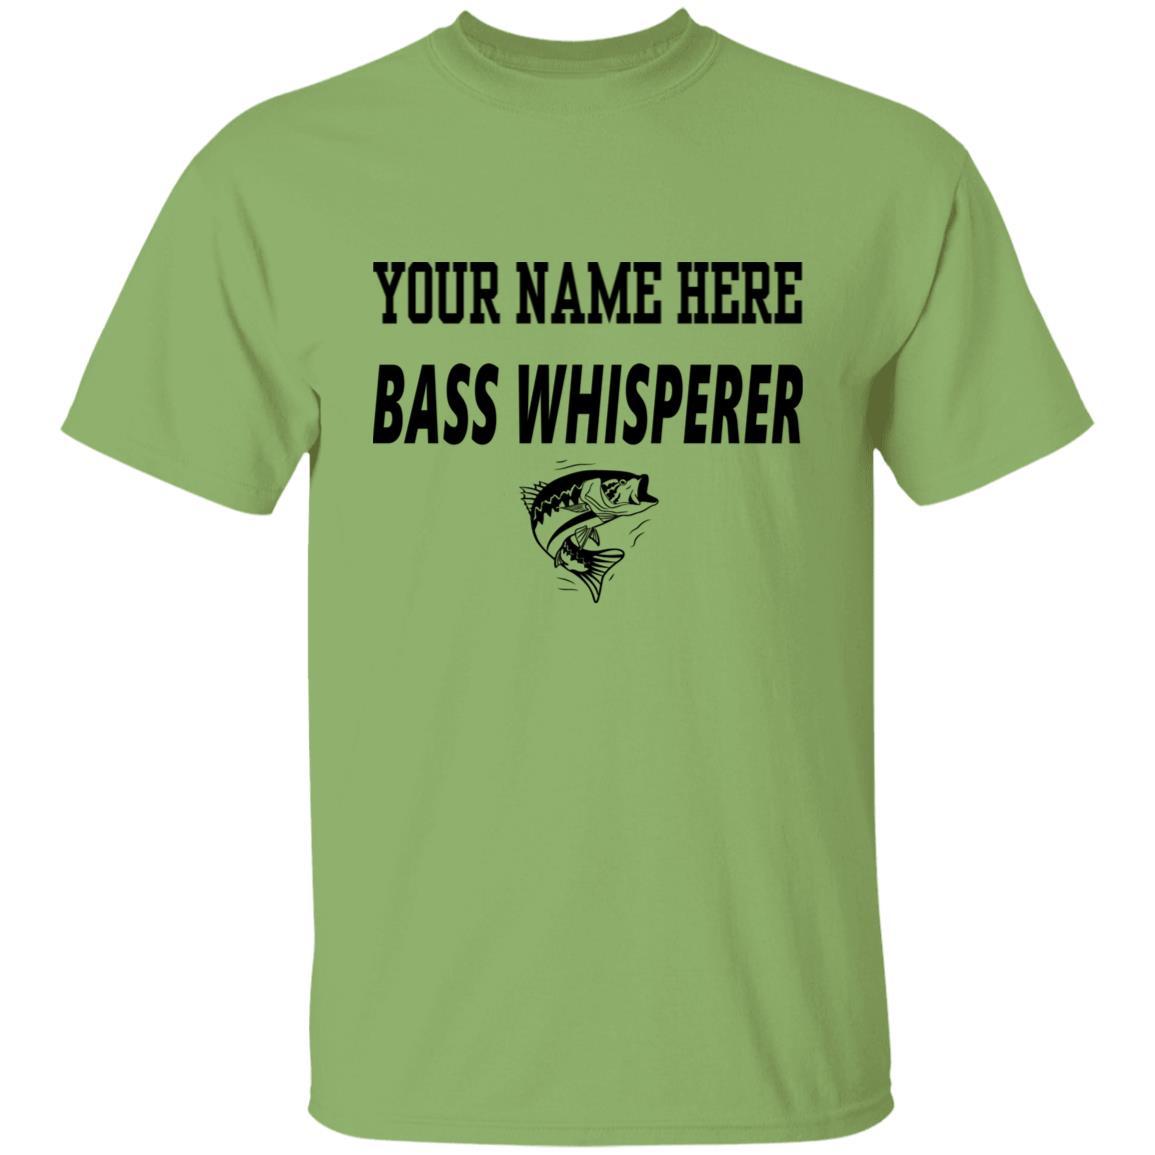 Personalized bass whisperer t shirt b kiwi